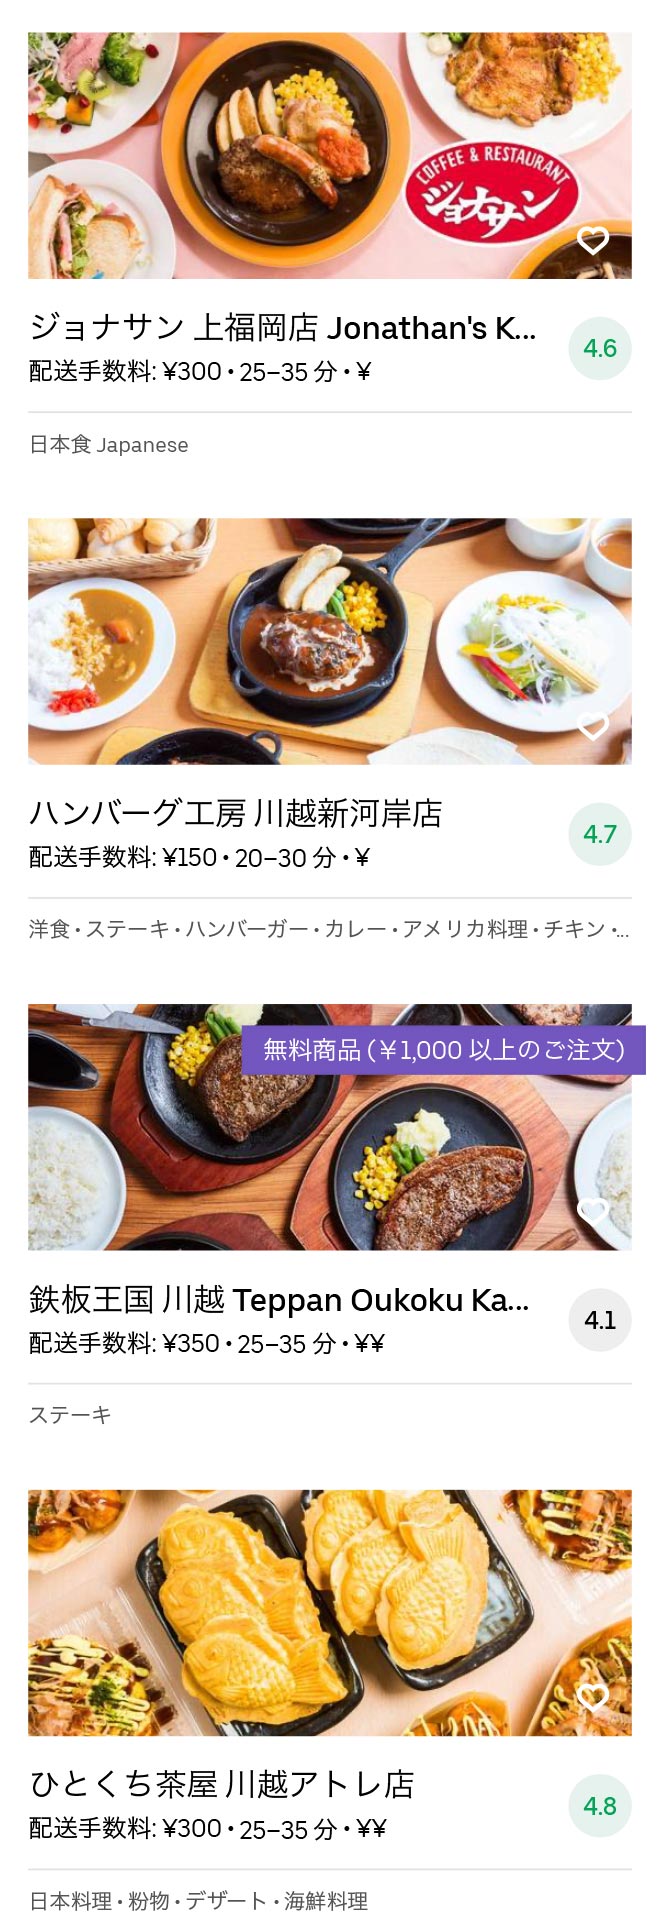 Shingashi menu 2008 11